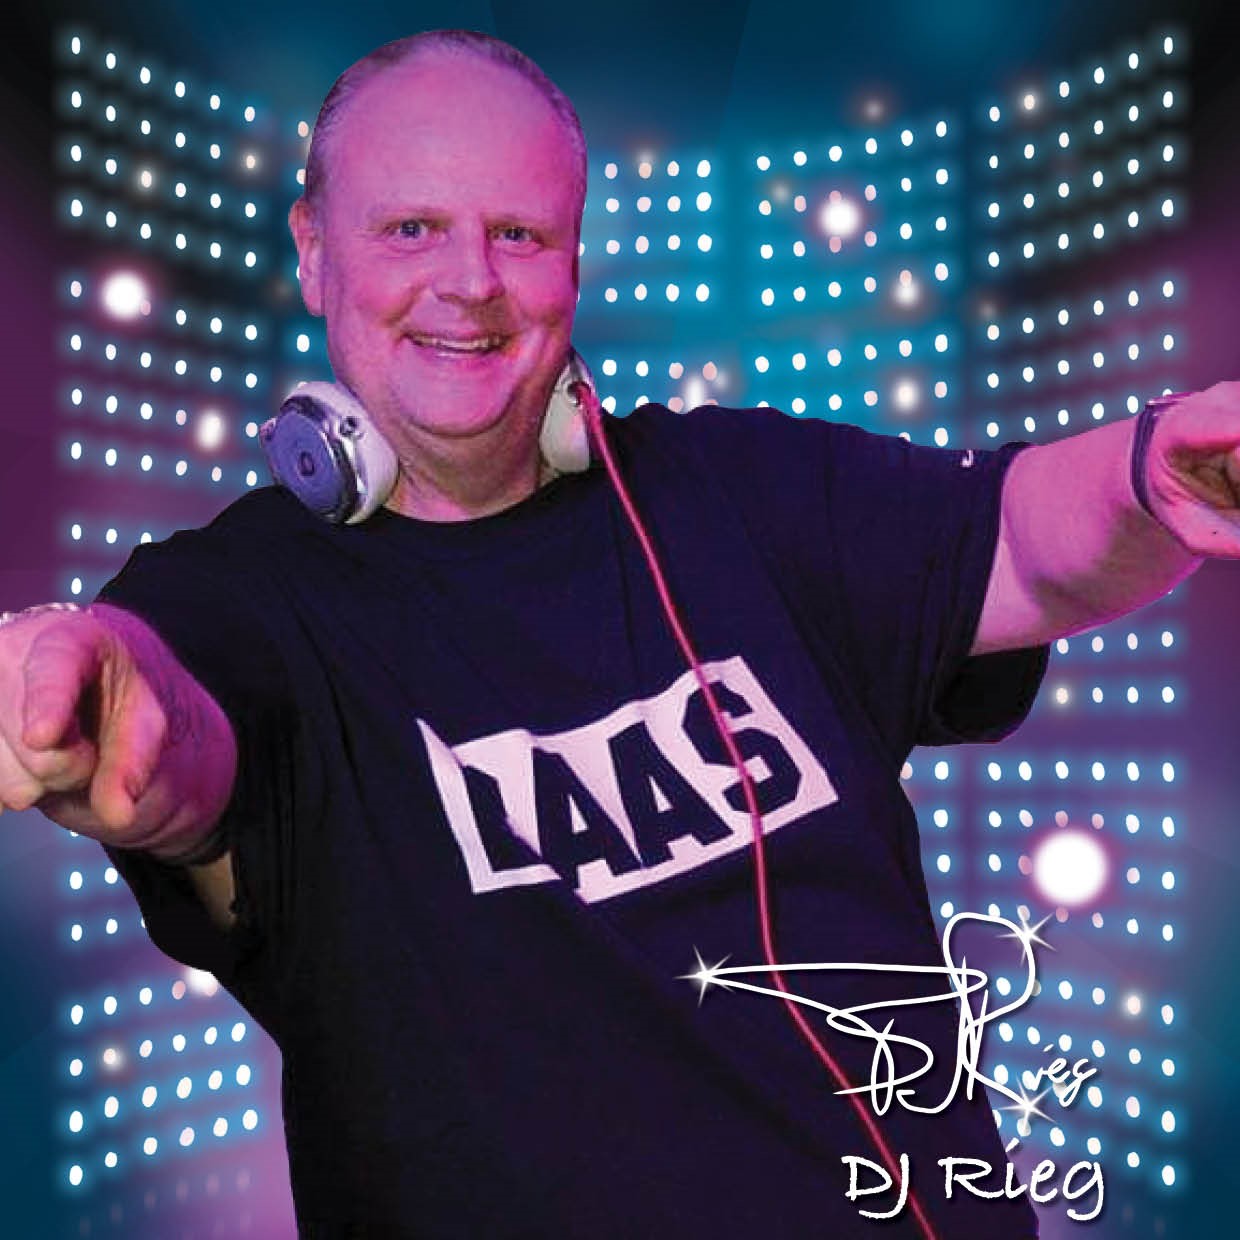 DJ Rieg